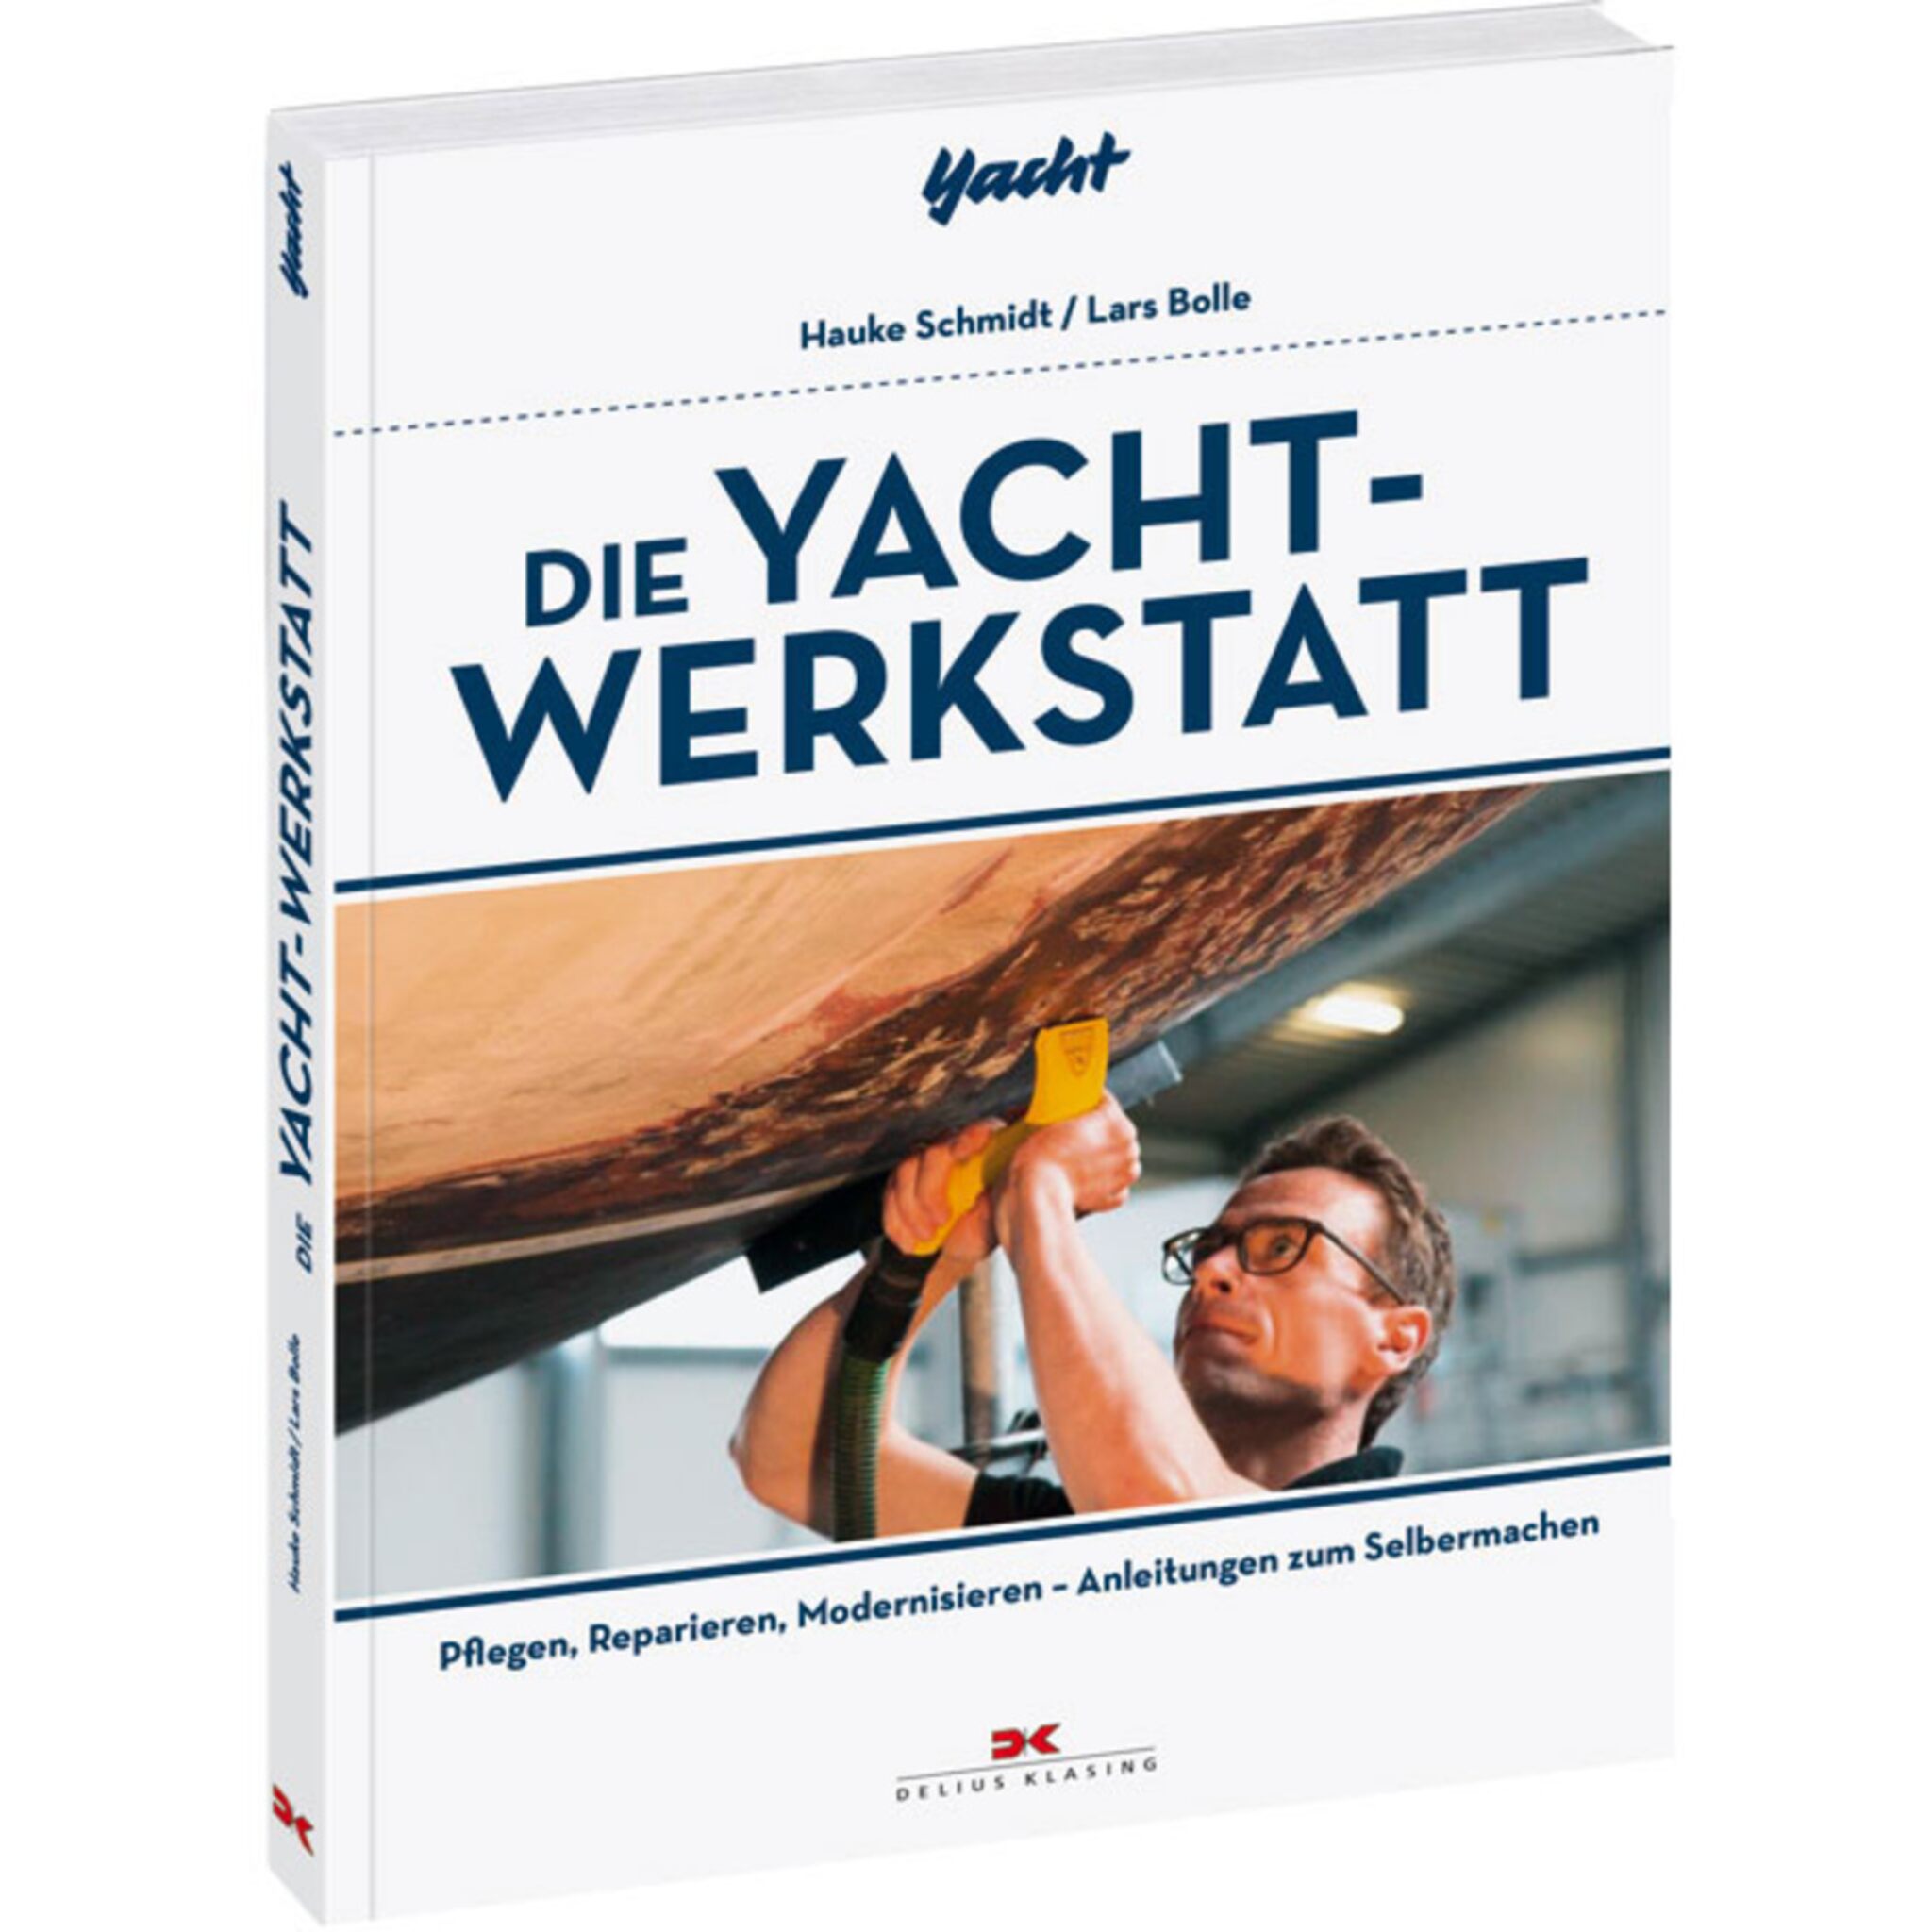 Delius Klasing Die Yacht-Werkstatt